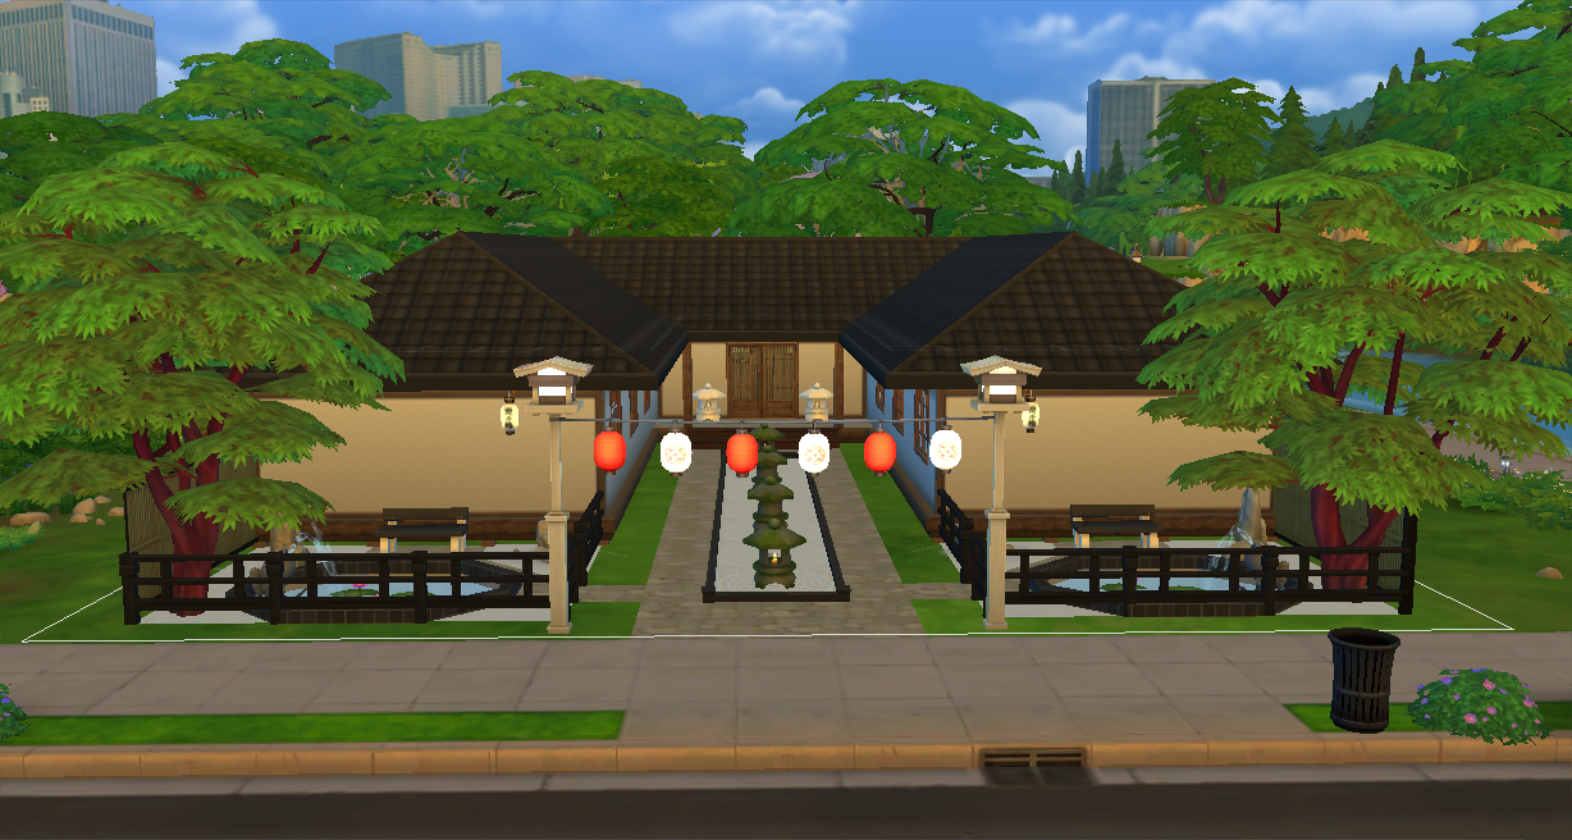 Mod The Sims Kaiseki The Japanese Restaurant